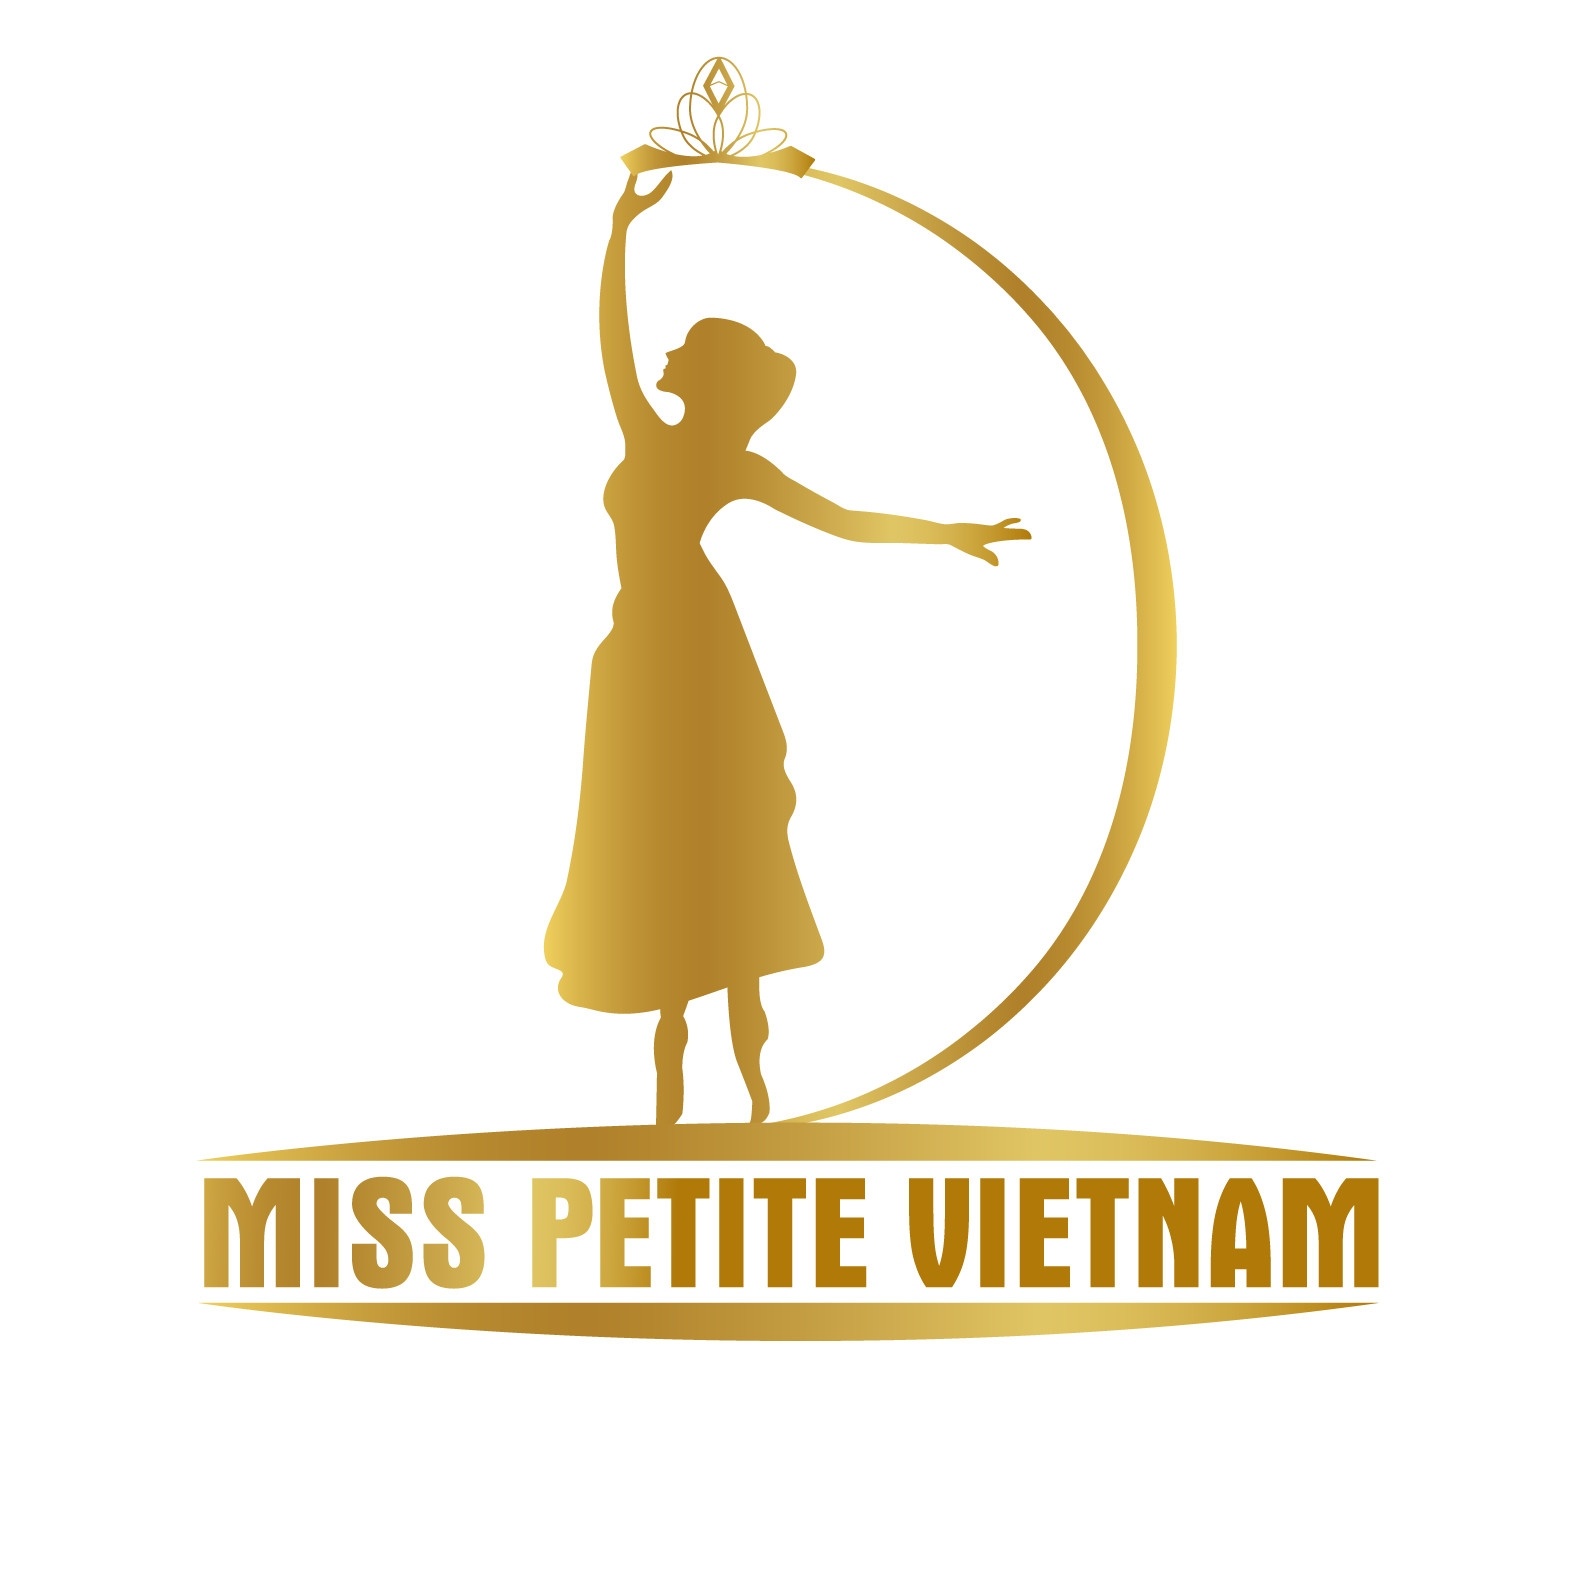 Nghe sắp có cuộc thi hoa hậu Miss Petite, dân mạng 'chia phe' ủng hộ, phản đối - ảnh 2